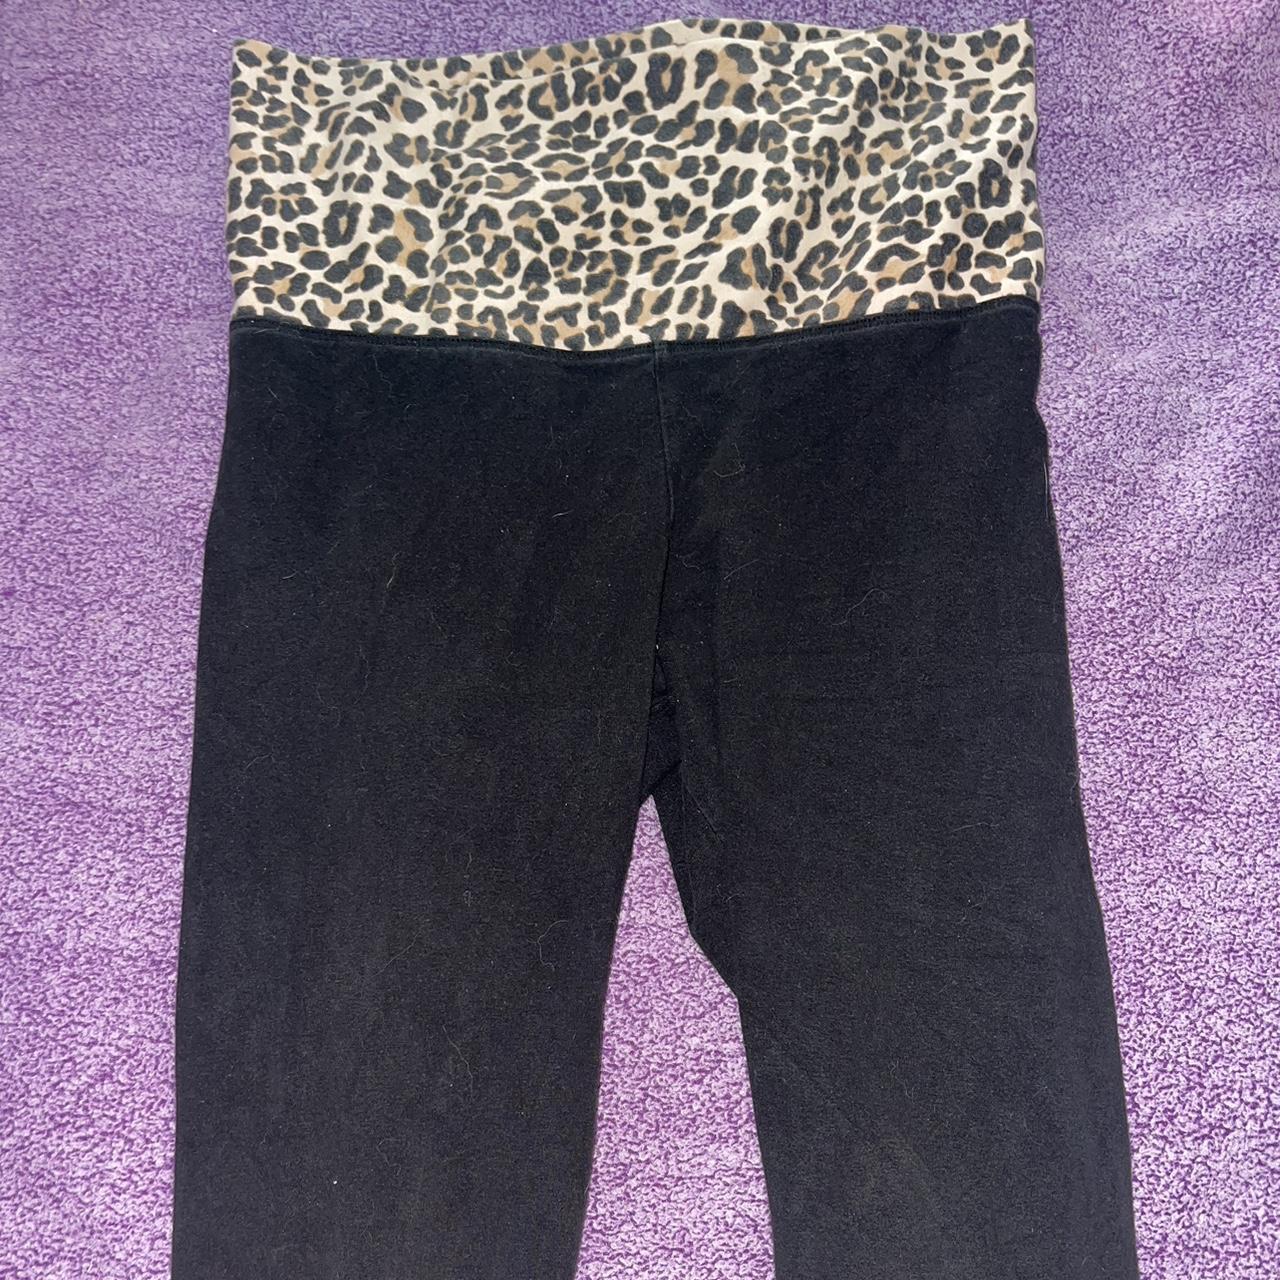 2000s y2k cheetah print foldover capri leggings... - Depop